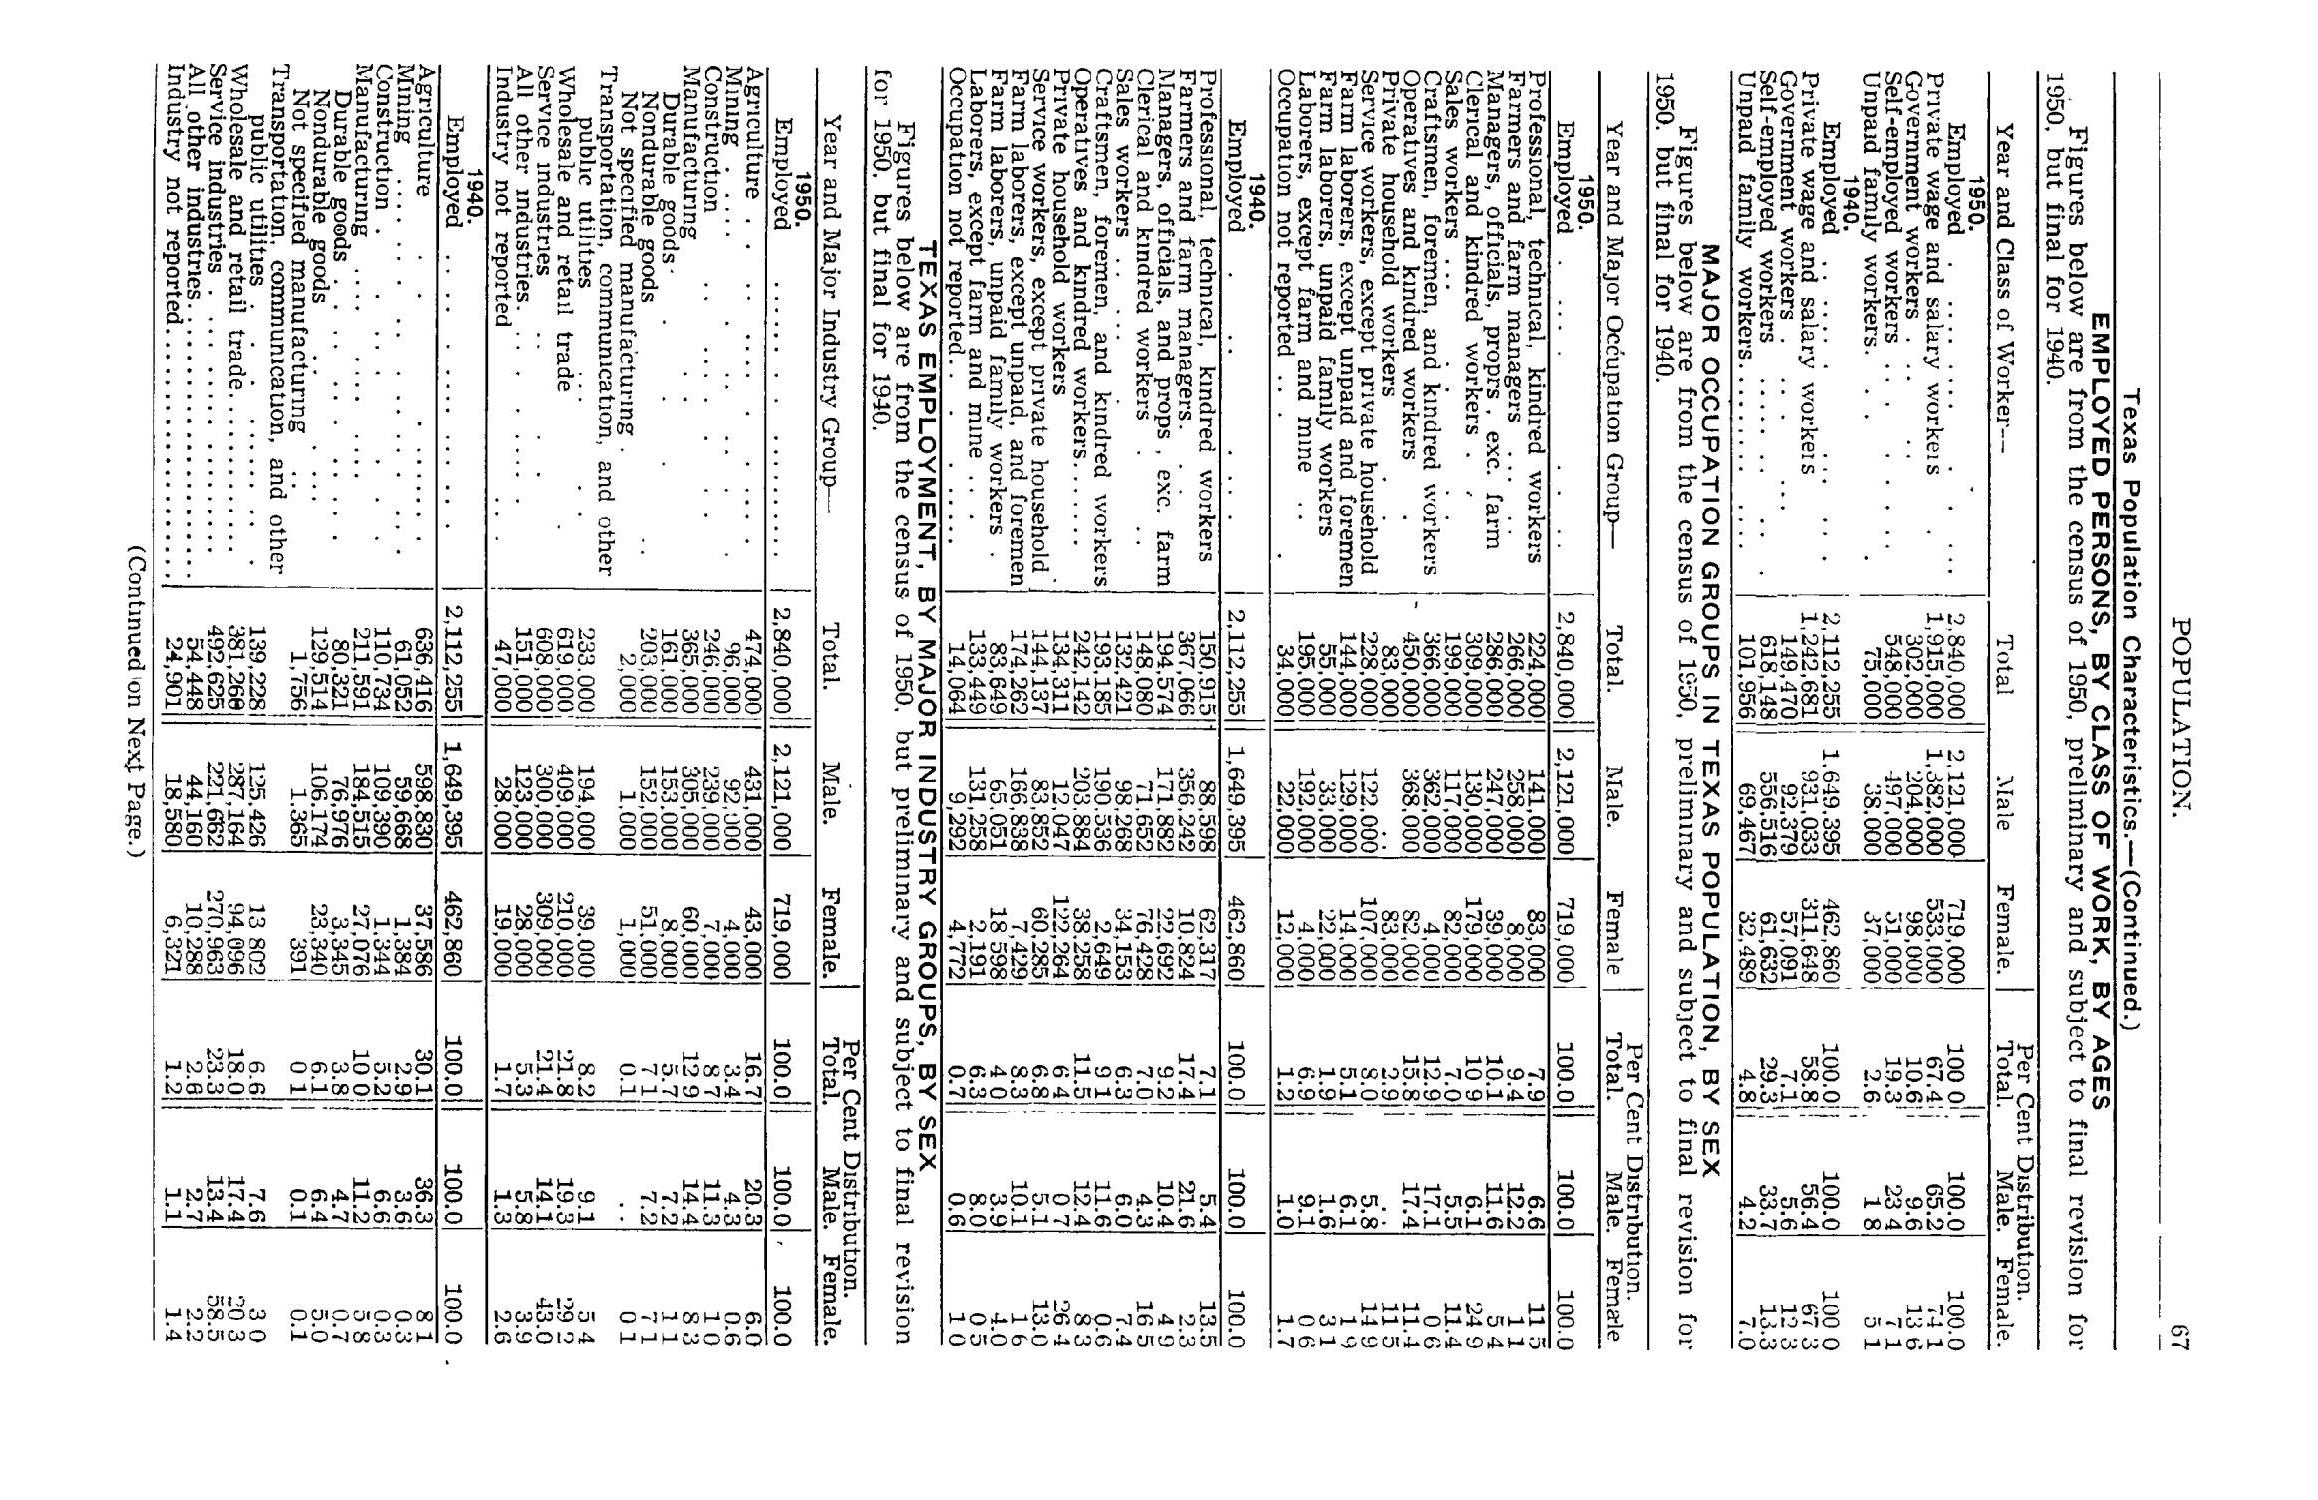 Texas Almanac, 1952-1953
                                                
                                                    67
                                                